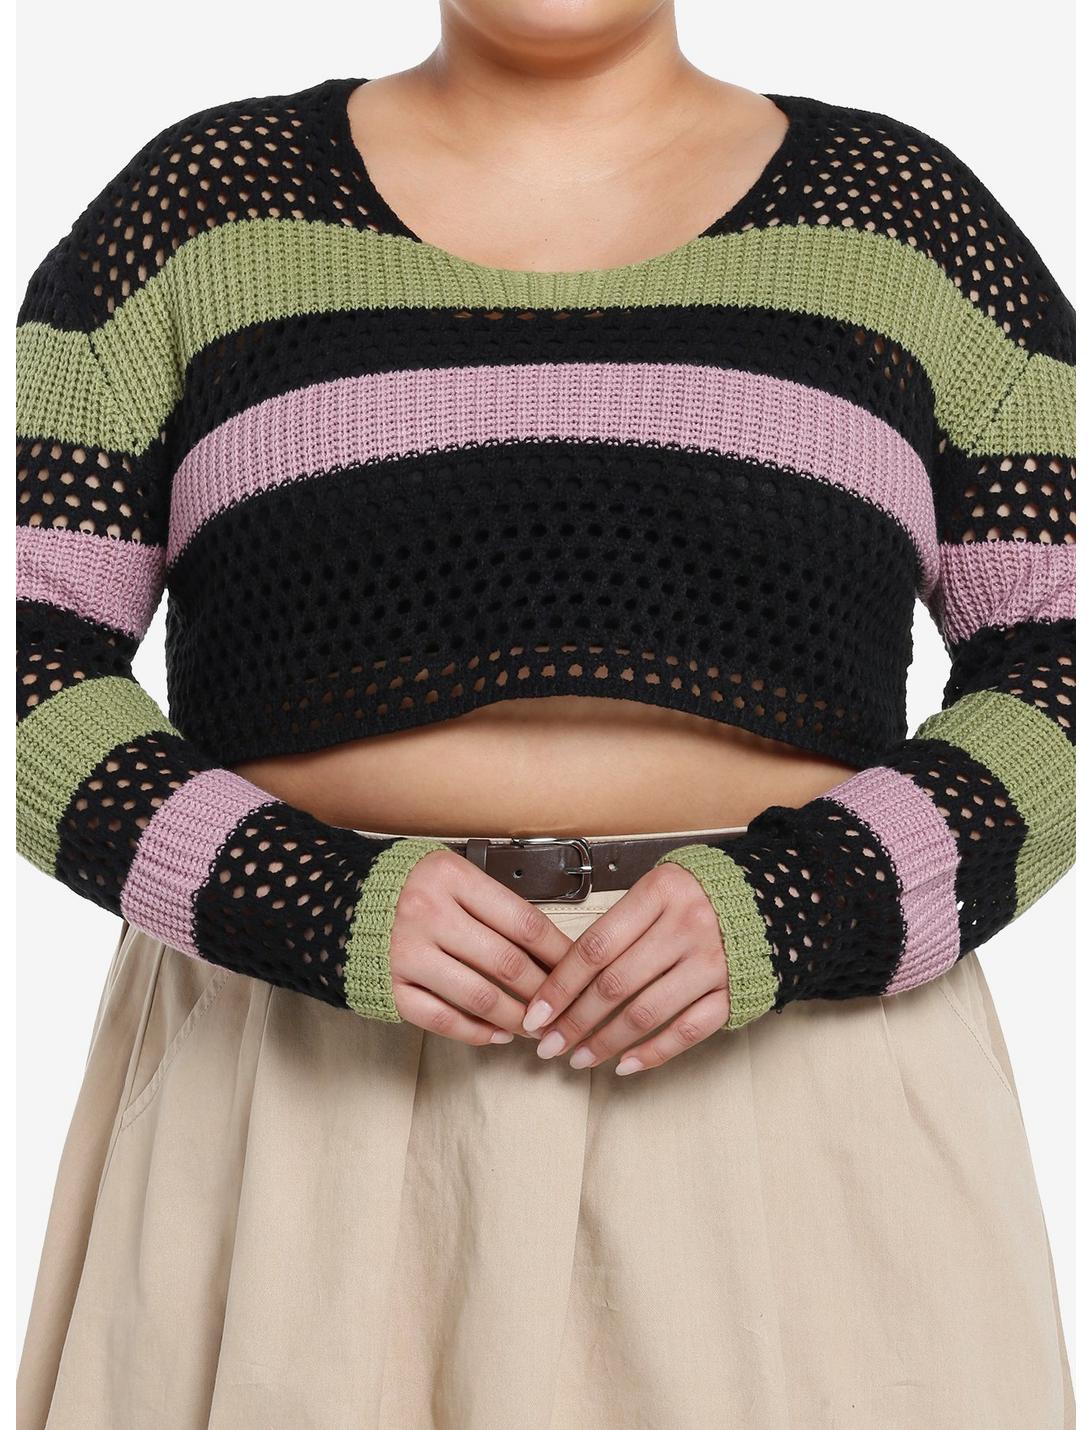 Sweet Society Stripe Girls Knit Shrug Plus Size, PINK, hi-res